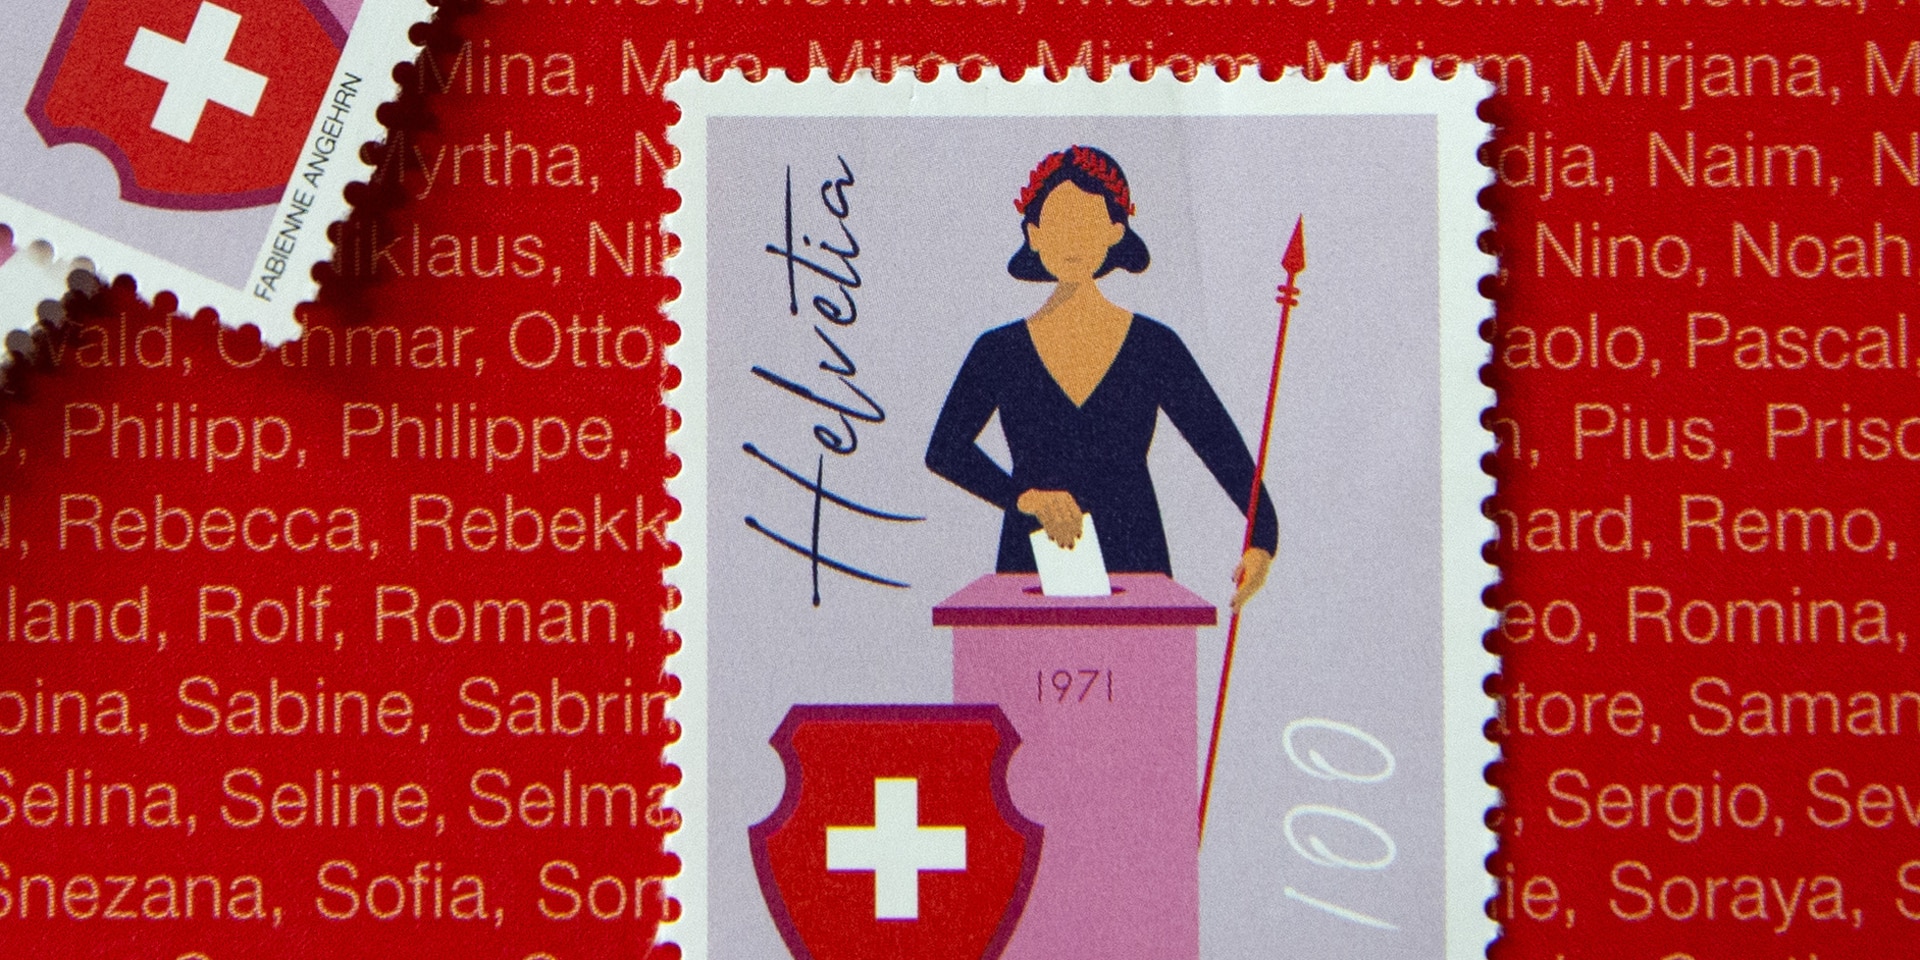 Timbre suisse émis à l’occasion de l’anniversaire des 50 ans du droit de vote et d’éligibilité des femmes.